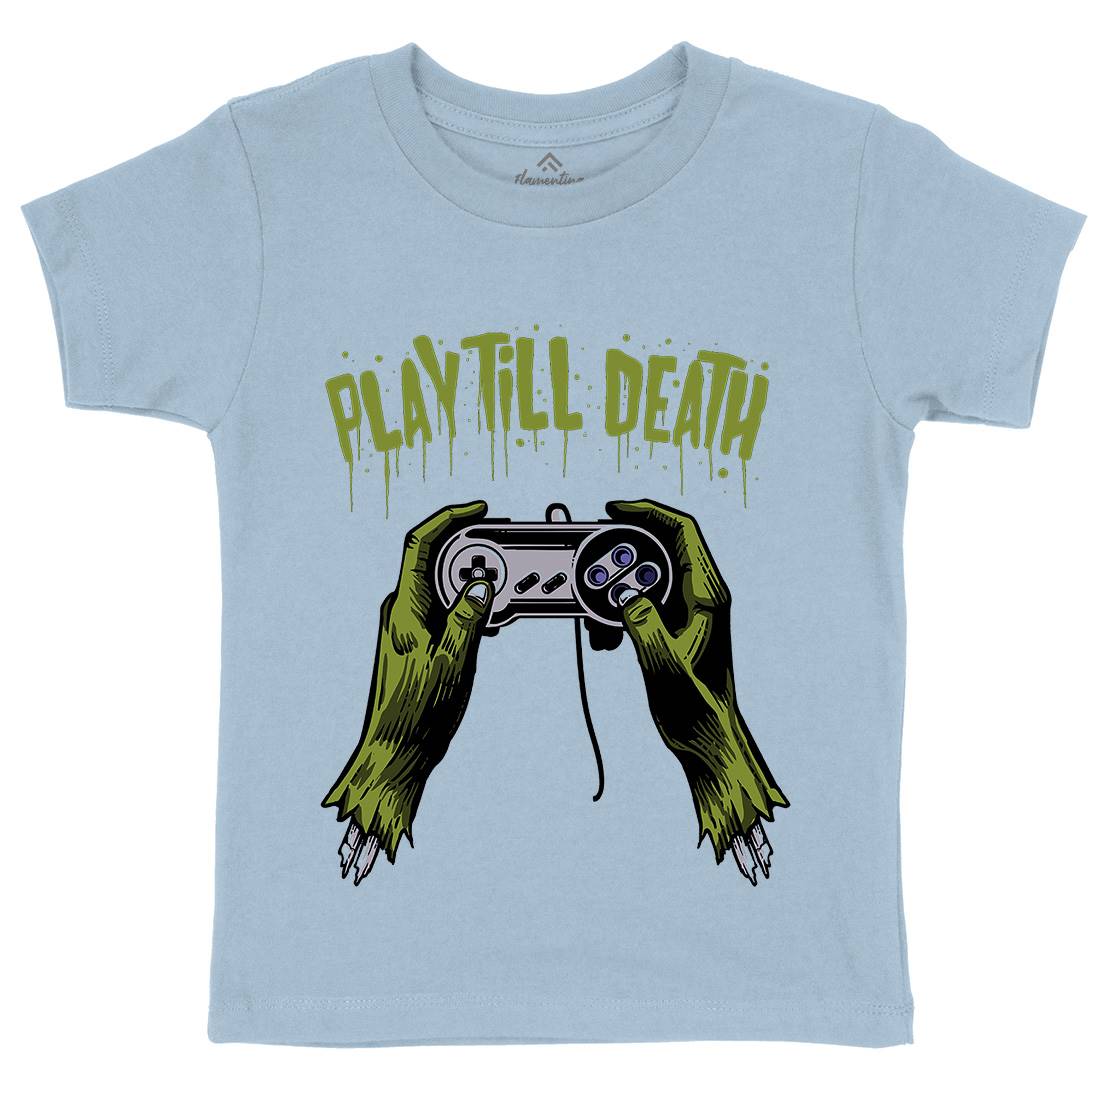 Play Till Death Kids Organic Crew Neck T-Shirt Geek A561